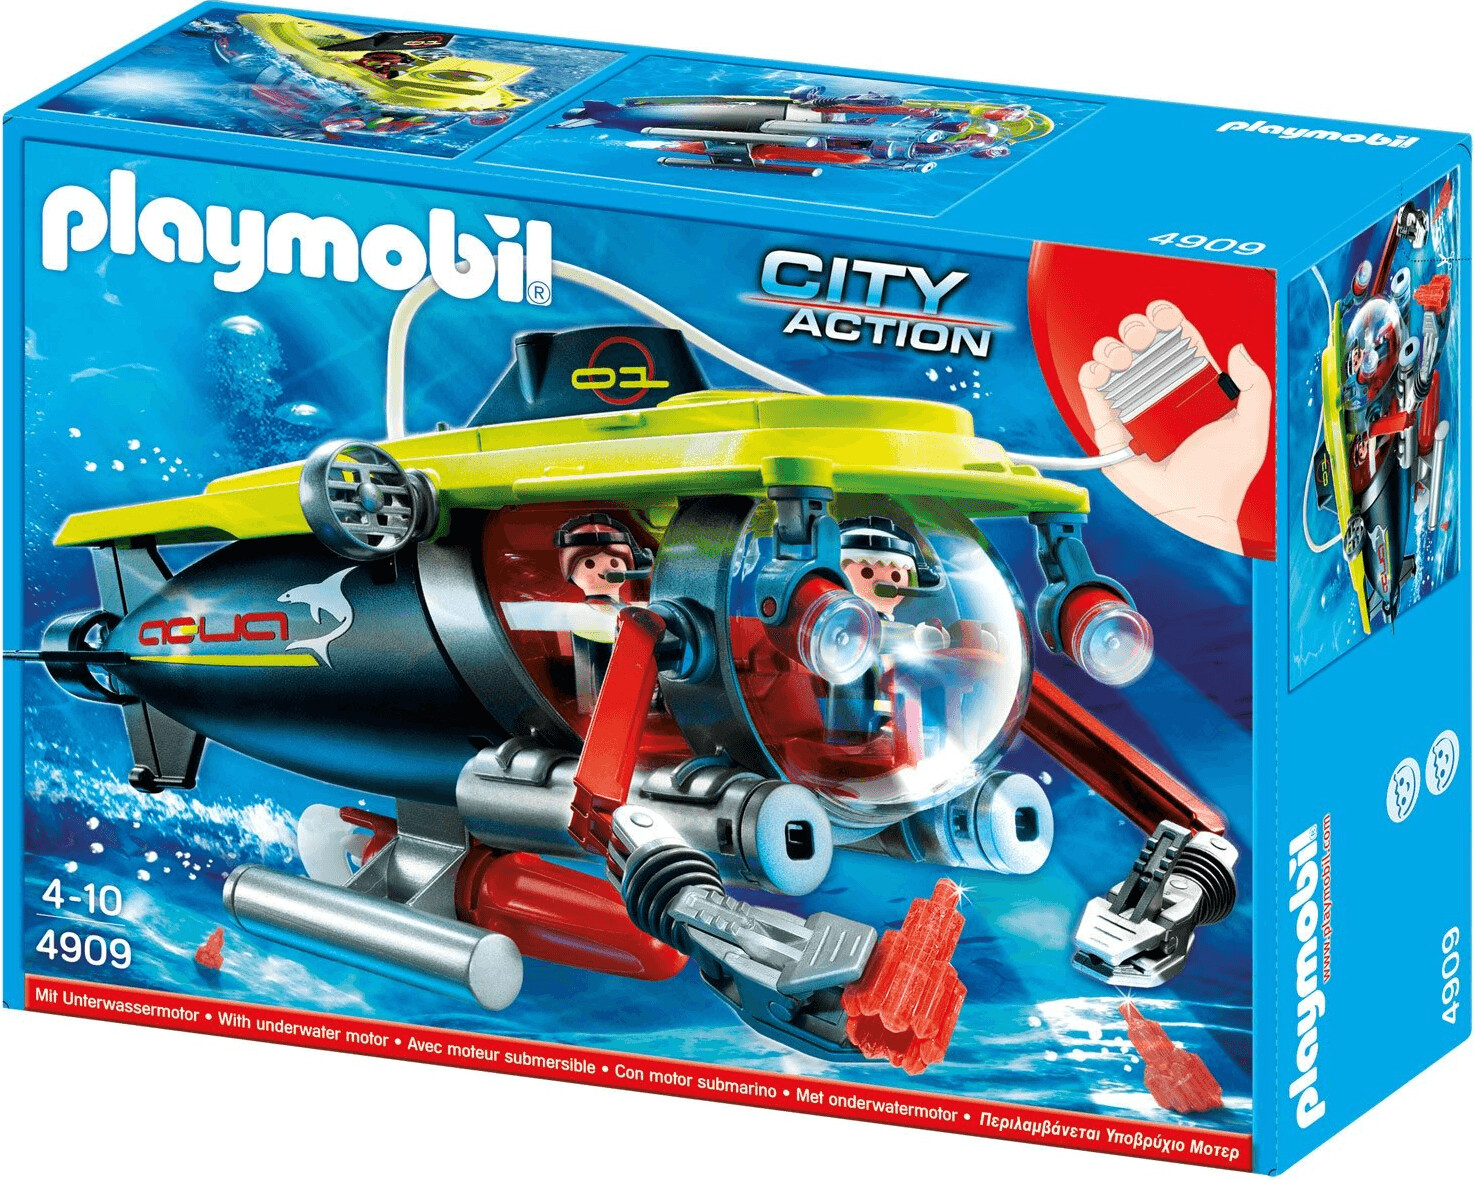 Playmobil Submarine with Underwater Motor (4909)